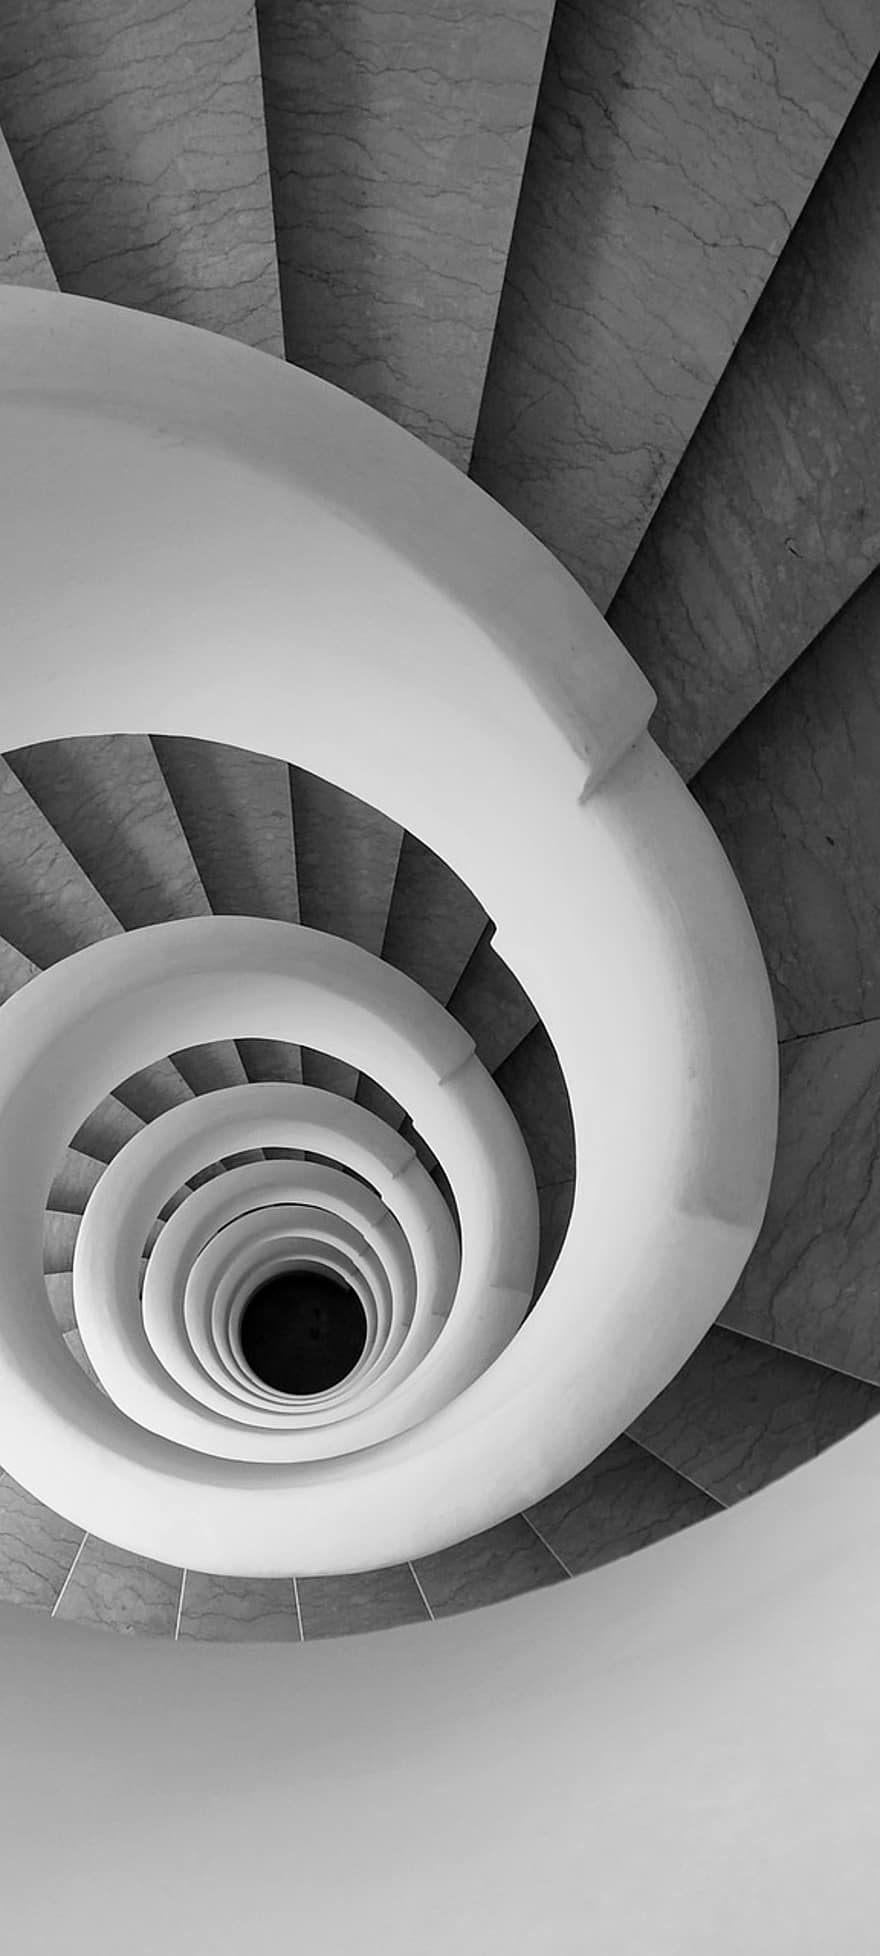 schody kręcone, klatka schodowa, spirala, architektura, wewnątrz, projekt, nowoczesny, abstrakcyjny, krzywa, pokój domowy, okrąg